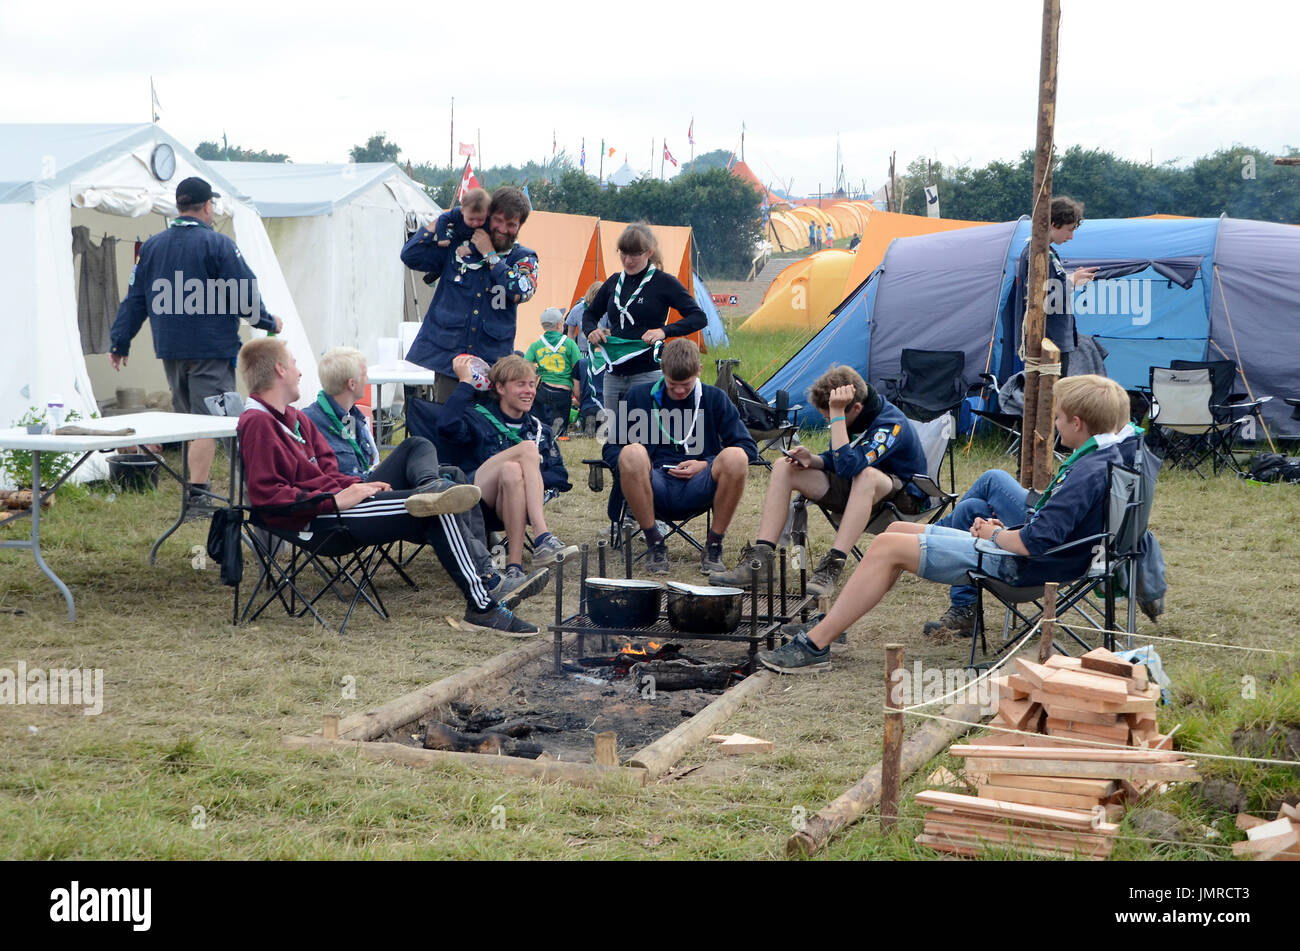 Sonderborg, Dänemark - 27. Juli 2017: International Scout Camp "Spejdernes Lejr 2017" (kurz SL2017). Pfadfinder zusammen mit einander und ihre Ipads, Stockfoto